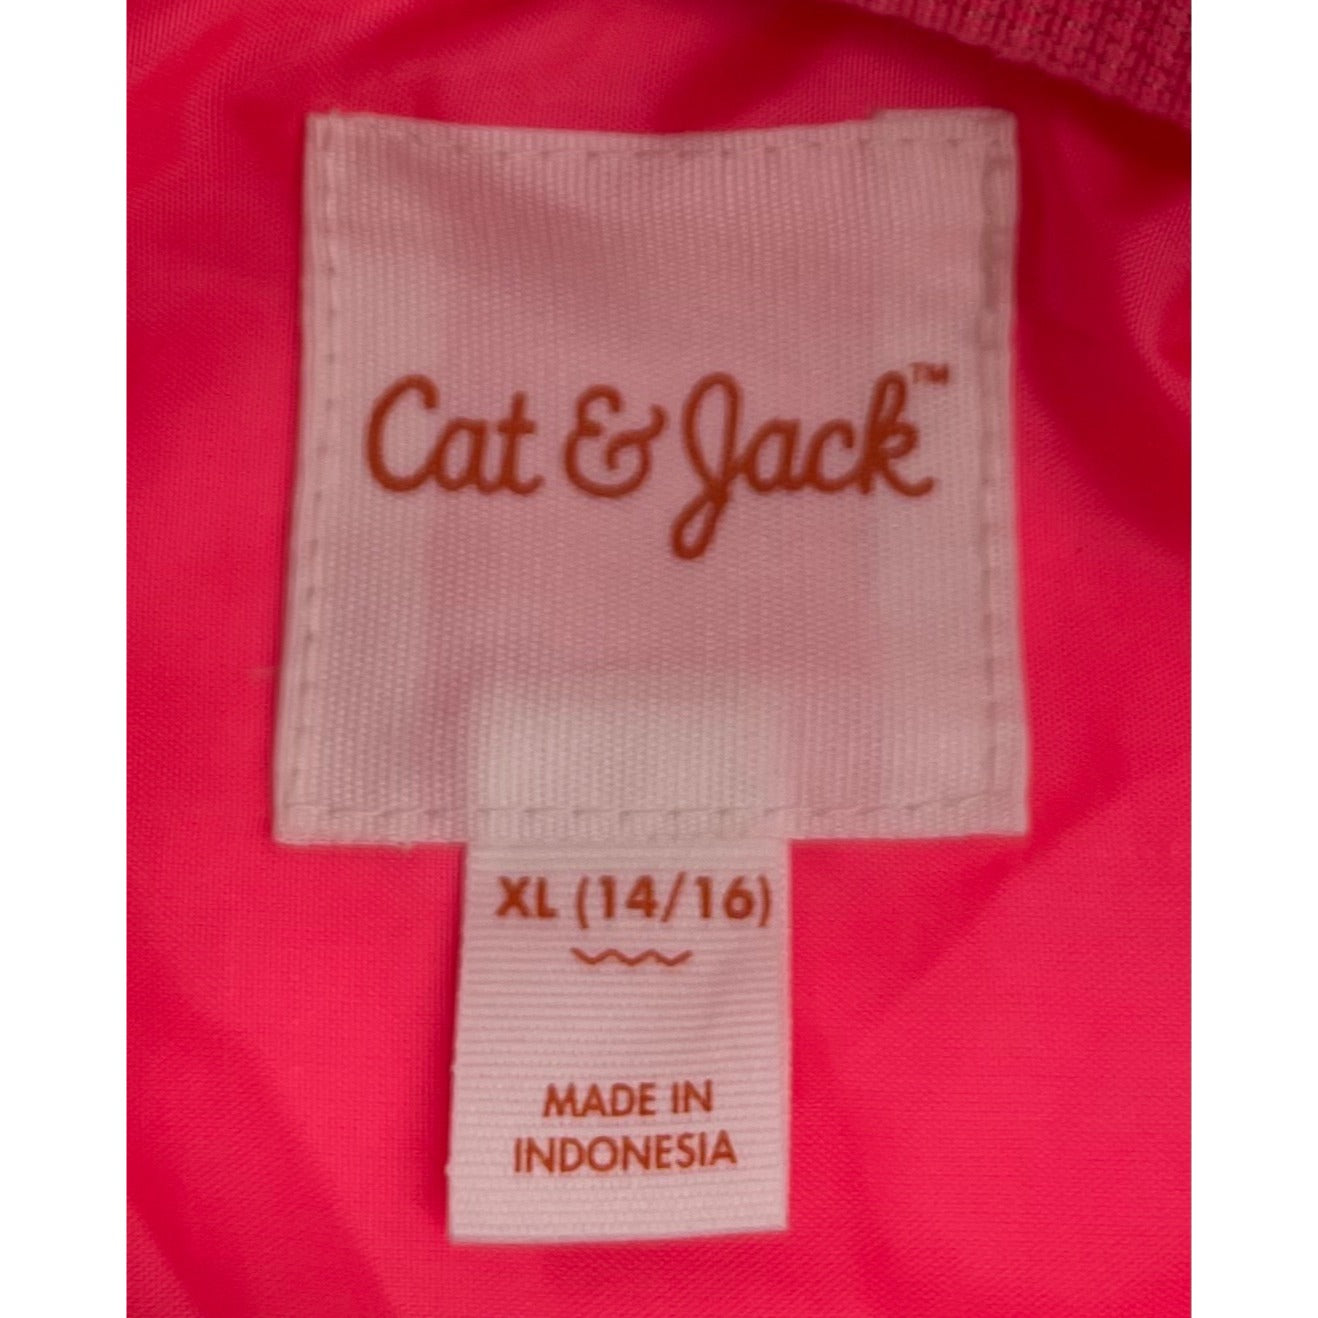 Cat & Jack Girl's Size XL (14/16) Hot Pink Teddy Fleece Zip-Up Jacket